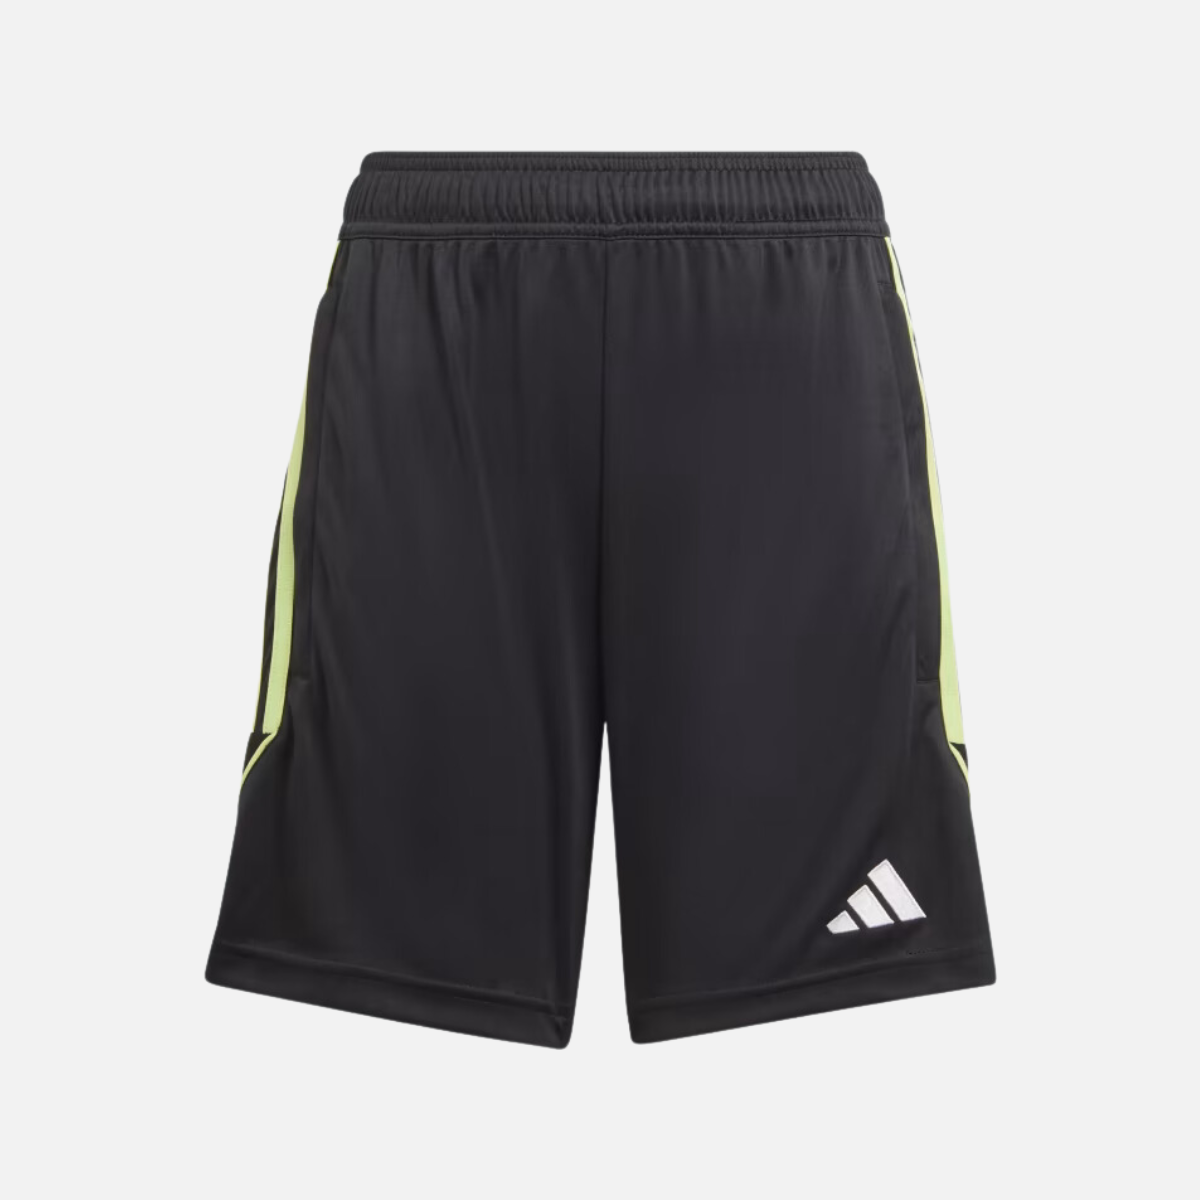 Adidas Tiro 23 League Kids Unisex Training Shorts (5-12 Years) -Black/Pulse Lime